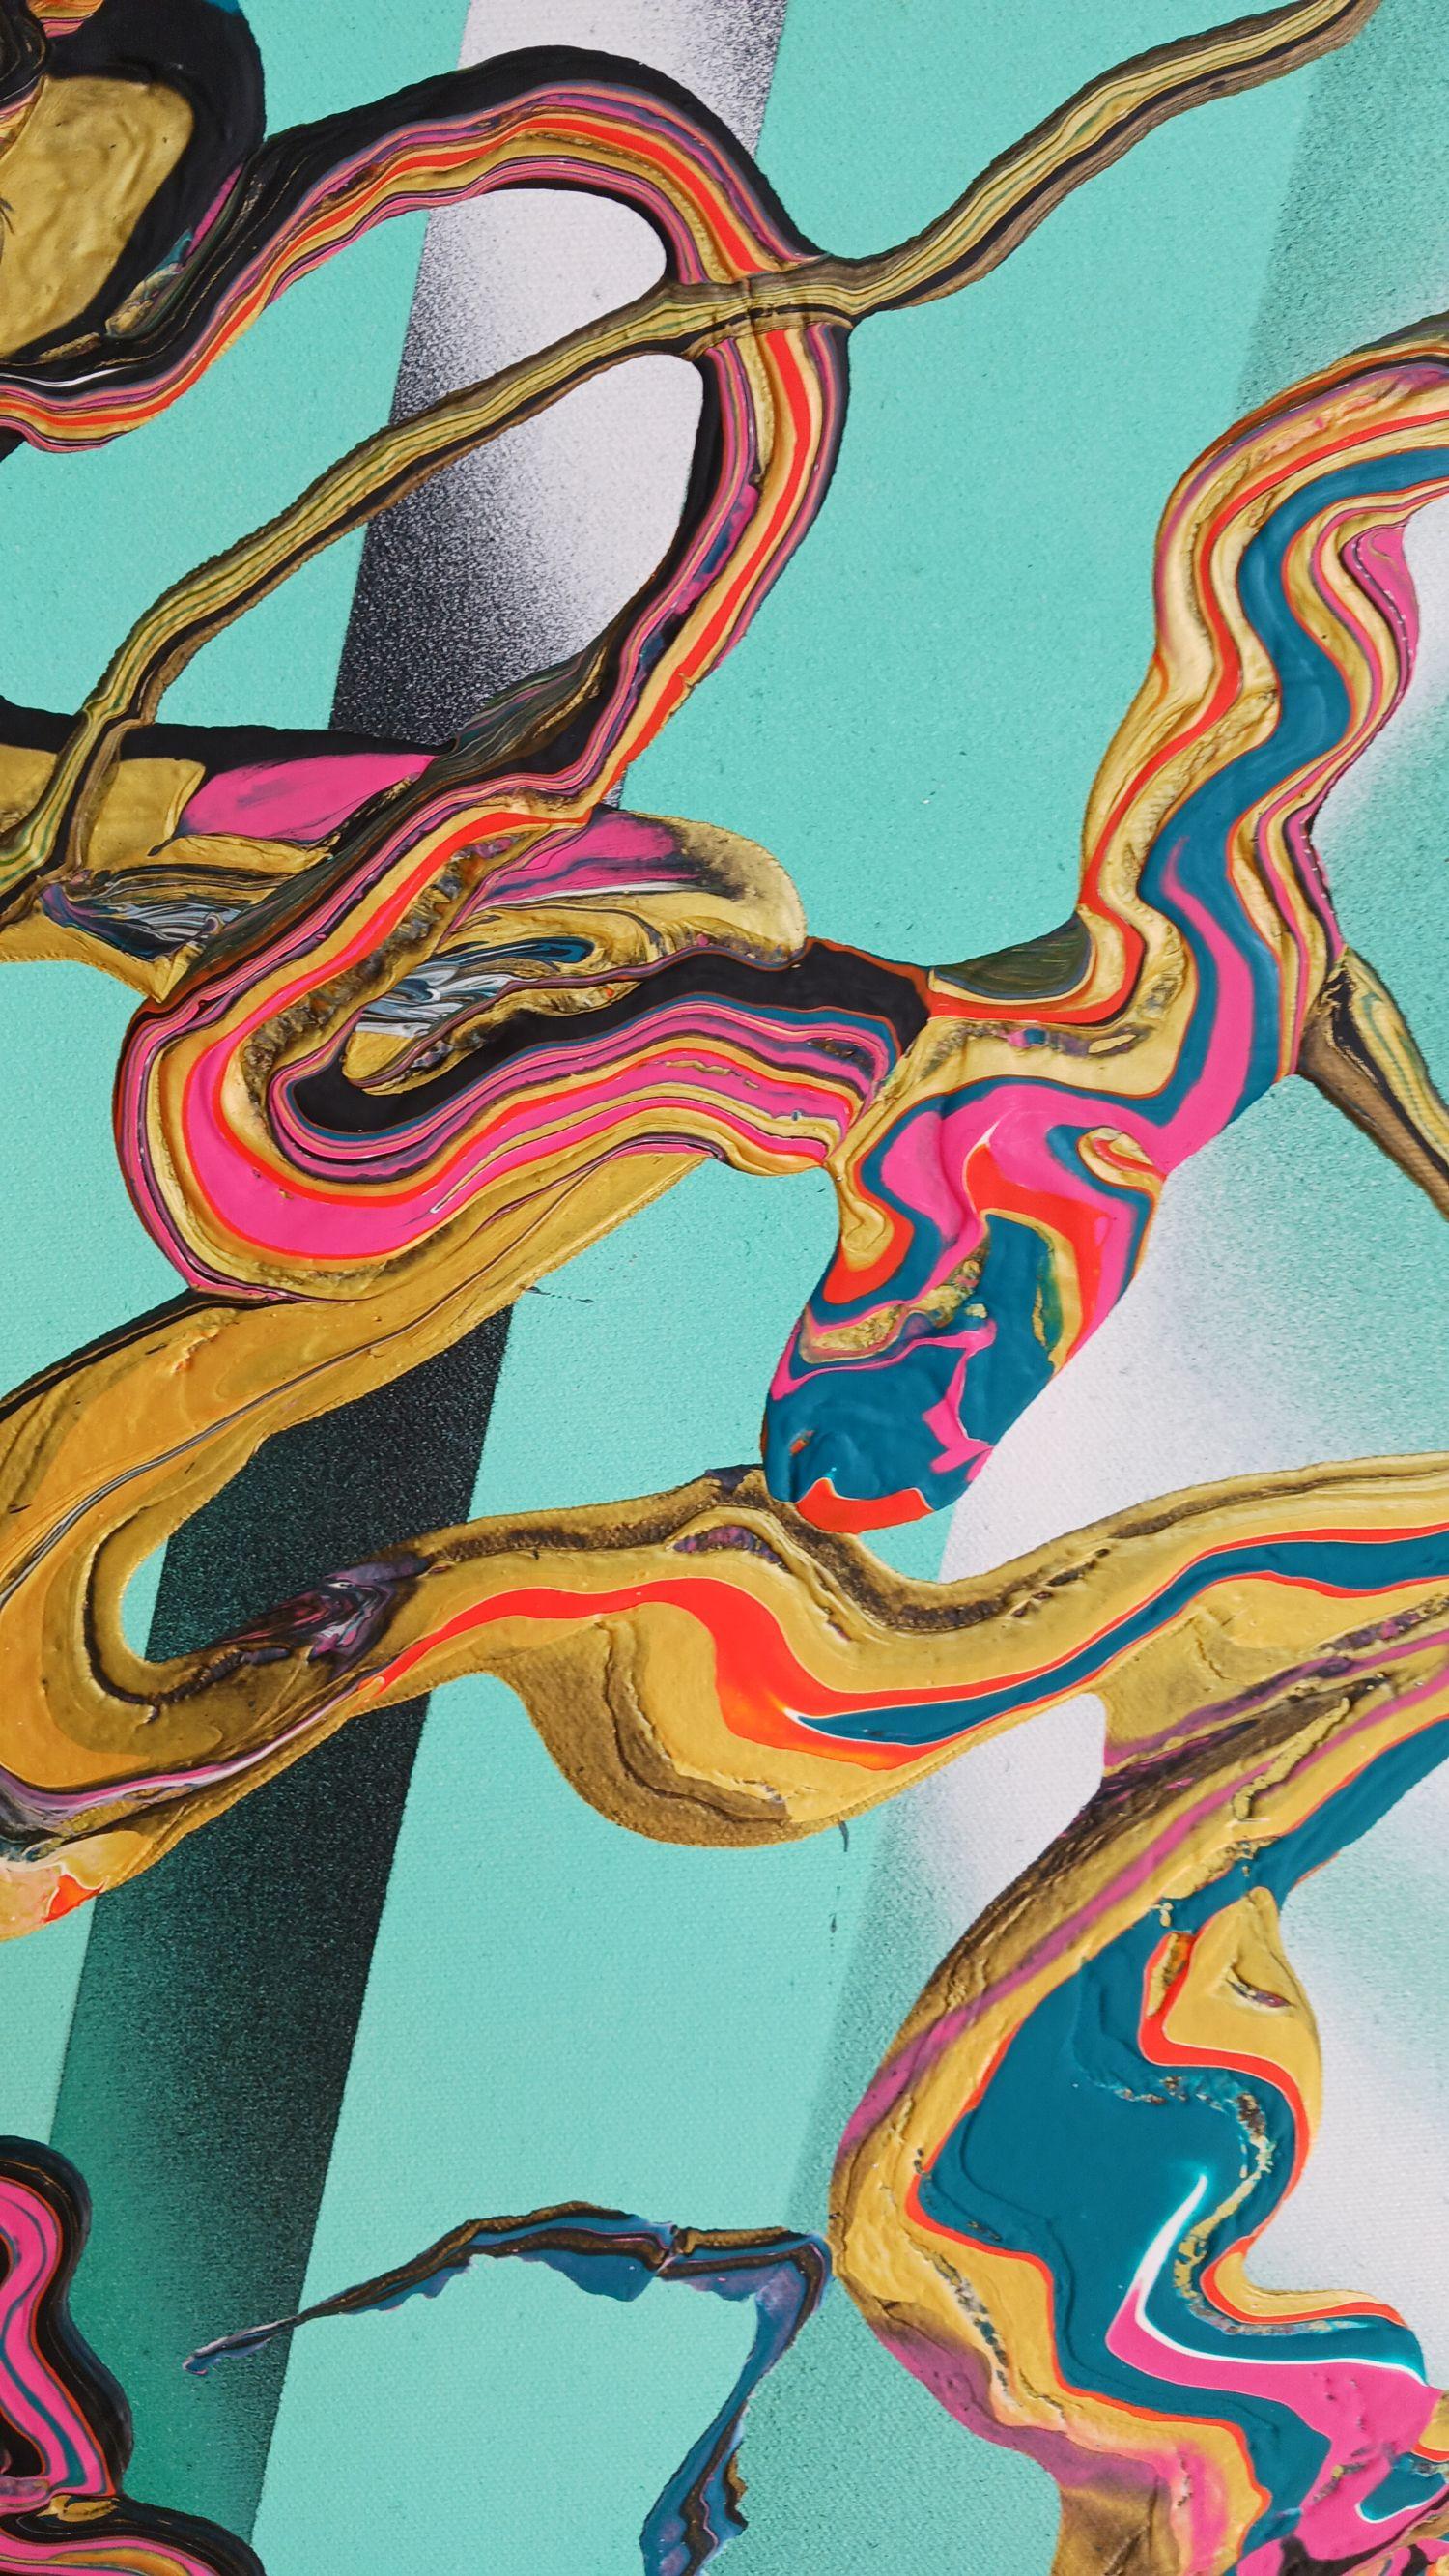 Rainbow Envy, Mixed Media on Canvas - Abstract Expressionist Mixed Media Art by Alexandra Romano